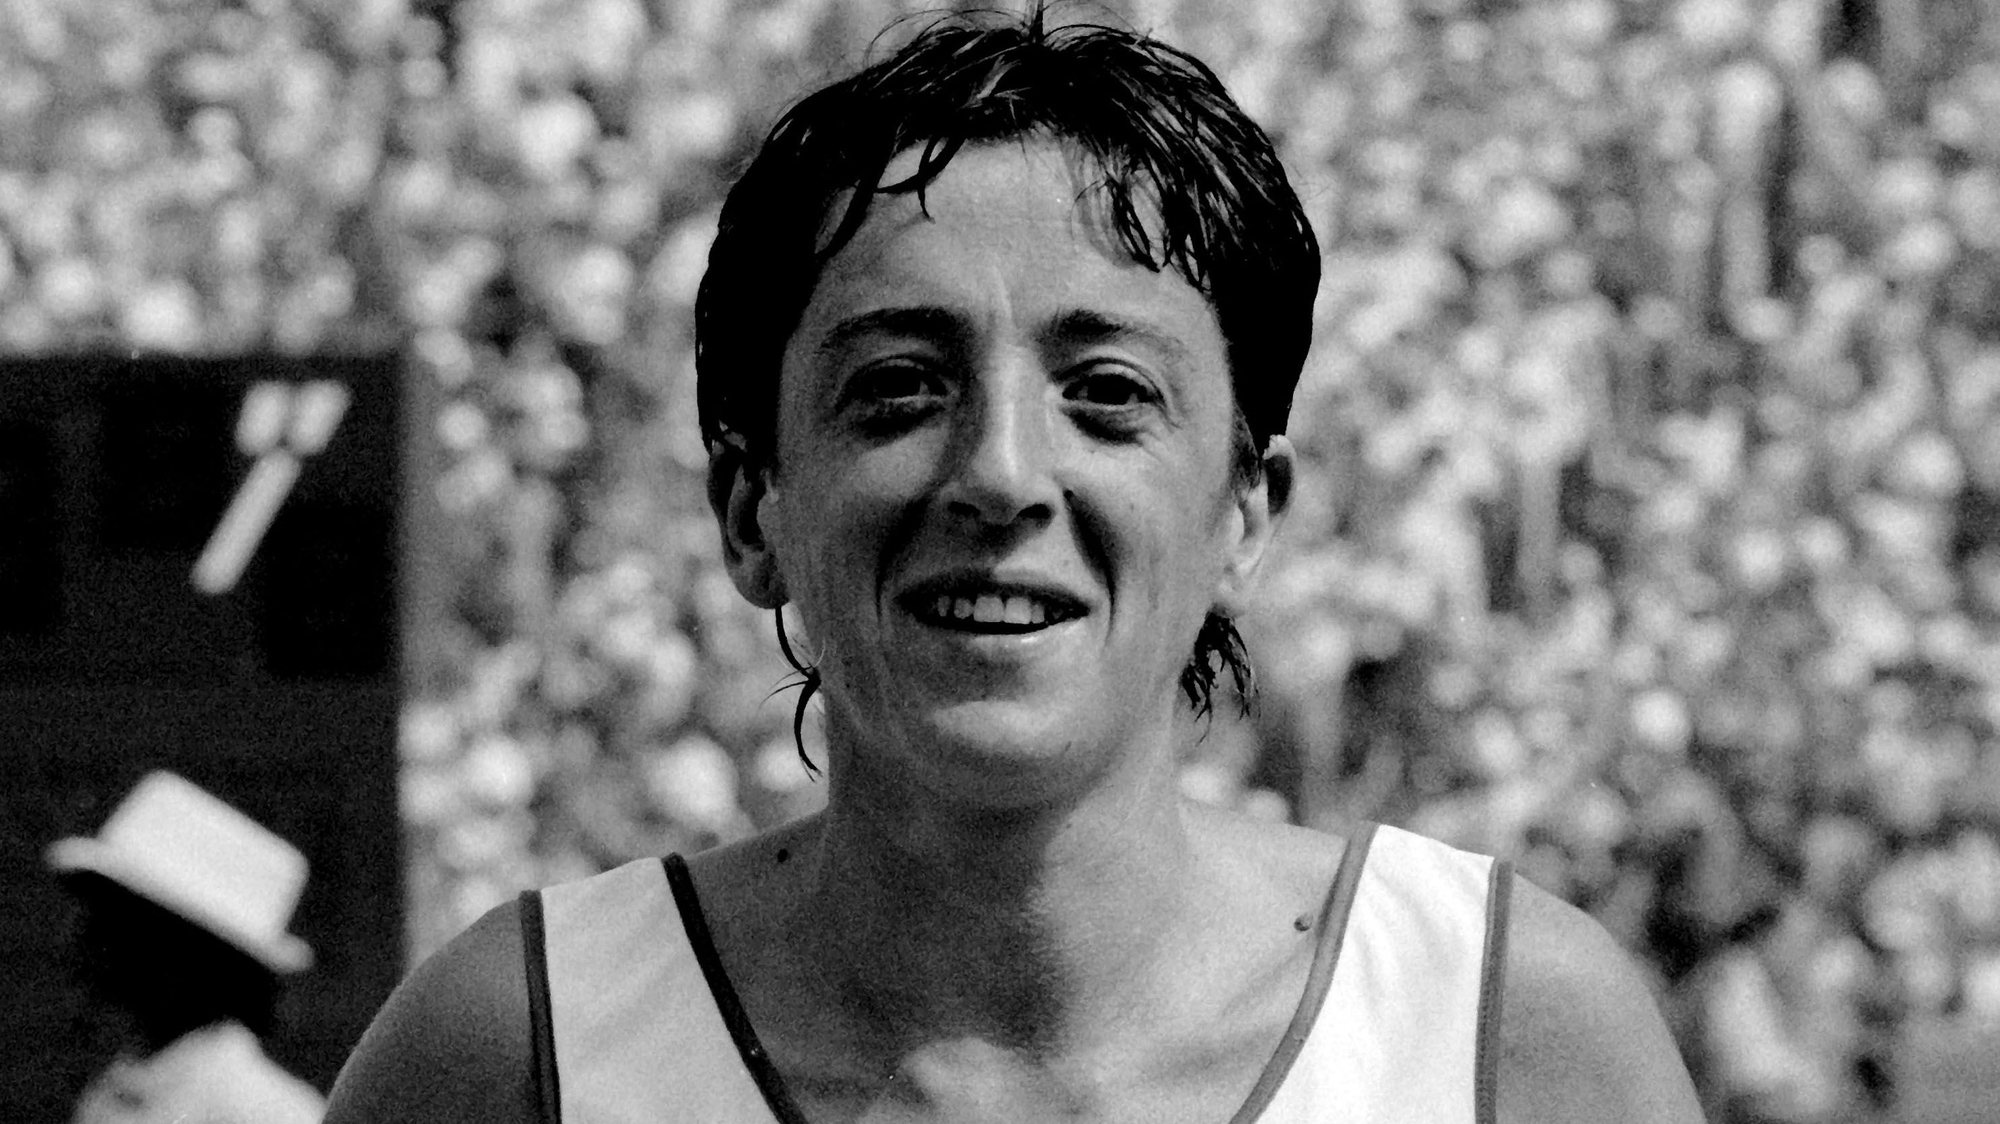 A atleta Rosa Mota no final da maratona feminina dos Jogos Olímpicos de Los Angeles a 5 de agosto de 1984 onde ganhou a medalha de bronze.

Luís Vasconcelos / Lusa